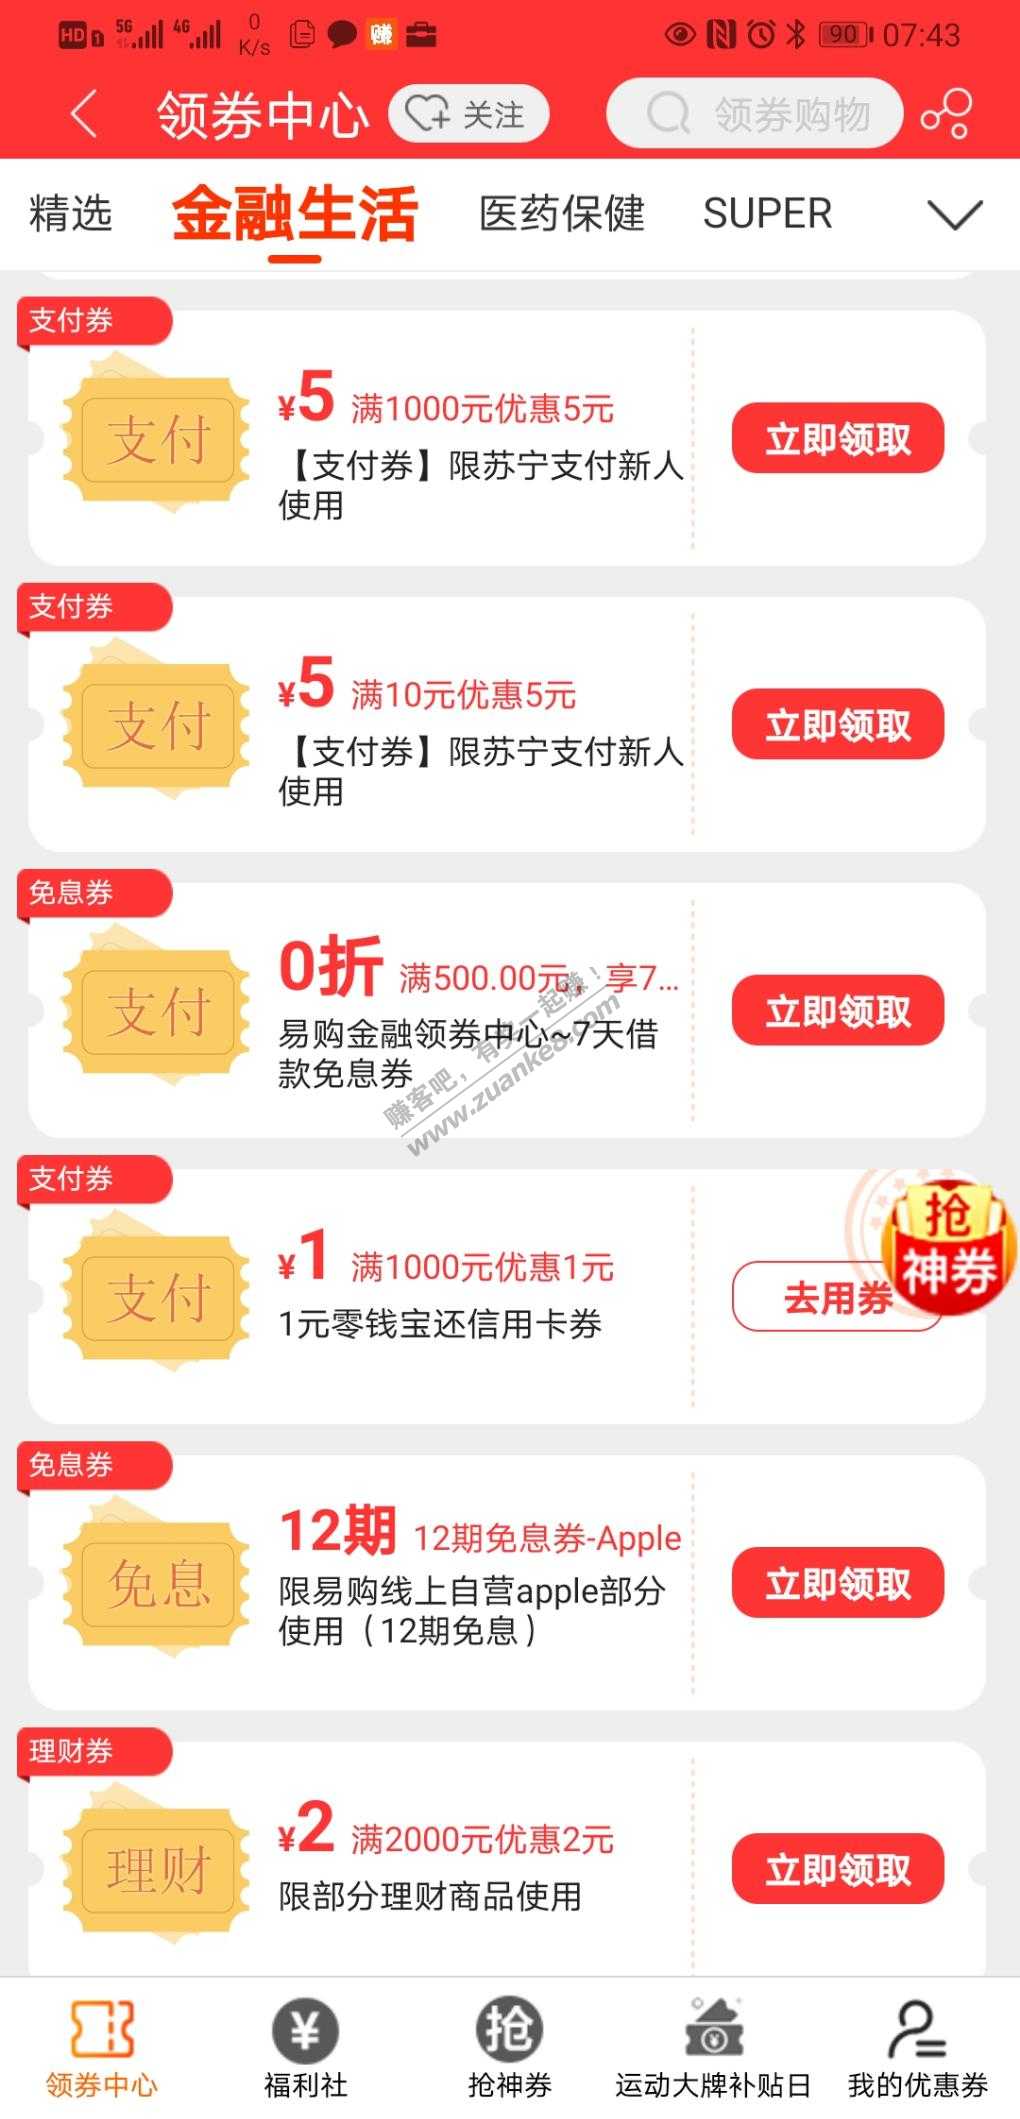 苏宁易购app-还款券1000-1-惠小助(52huixz.com)